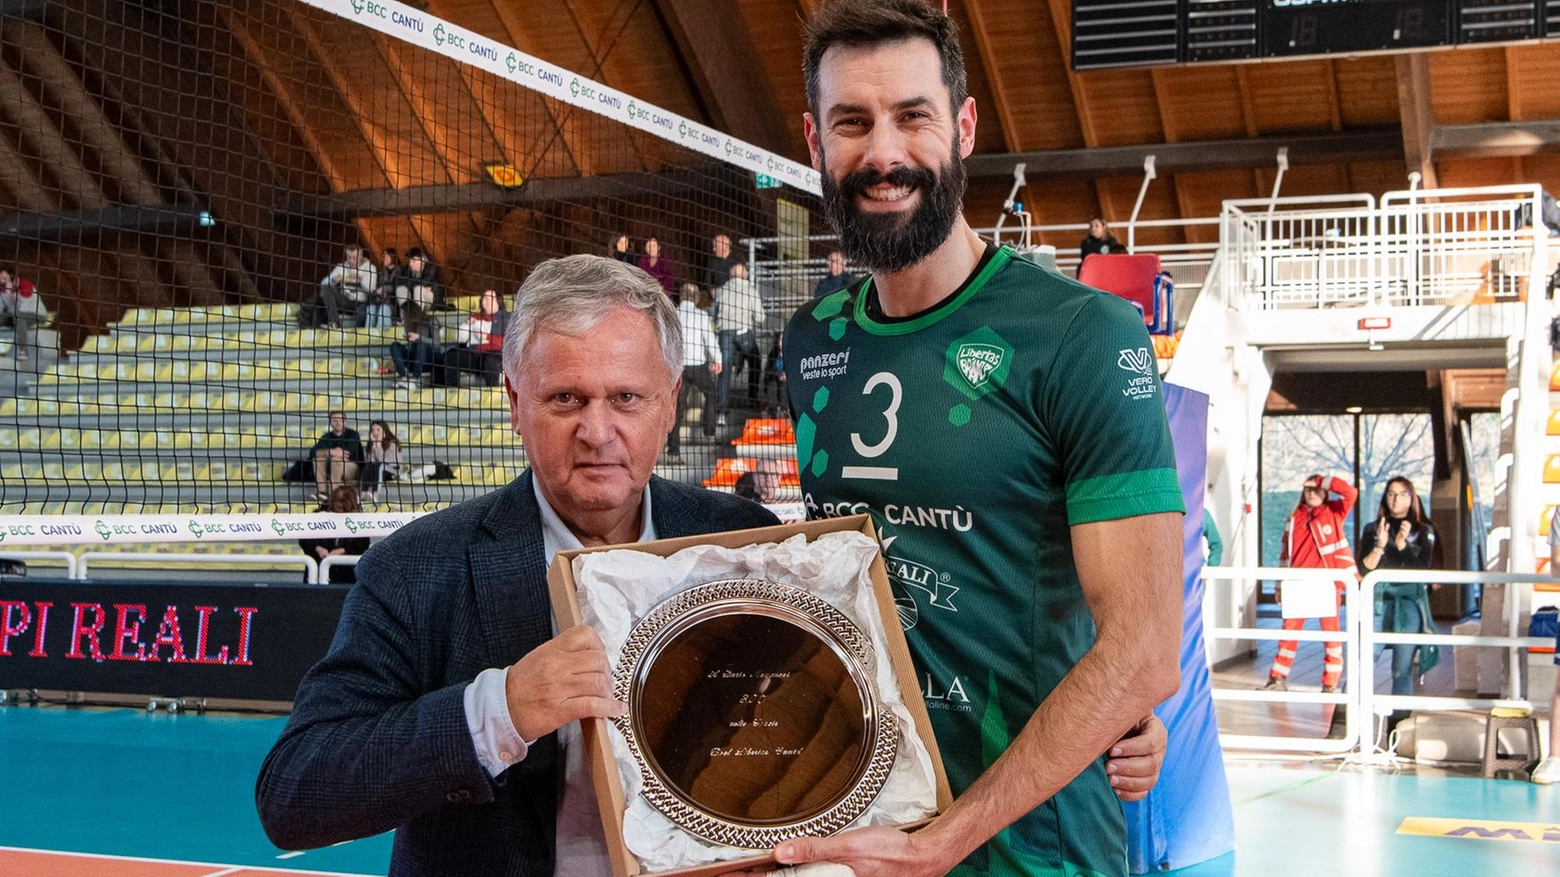 Il centrale Dario Monguzzi, simbolo della Pool Libertas Cantù, annuncia il suo ritiro dopo 19 anni di fedeltà alla maglia. Un addio emozionante per un giocatore che ha fatto la storia del volley italiano.